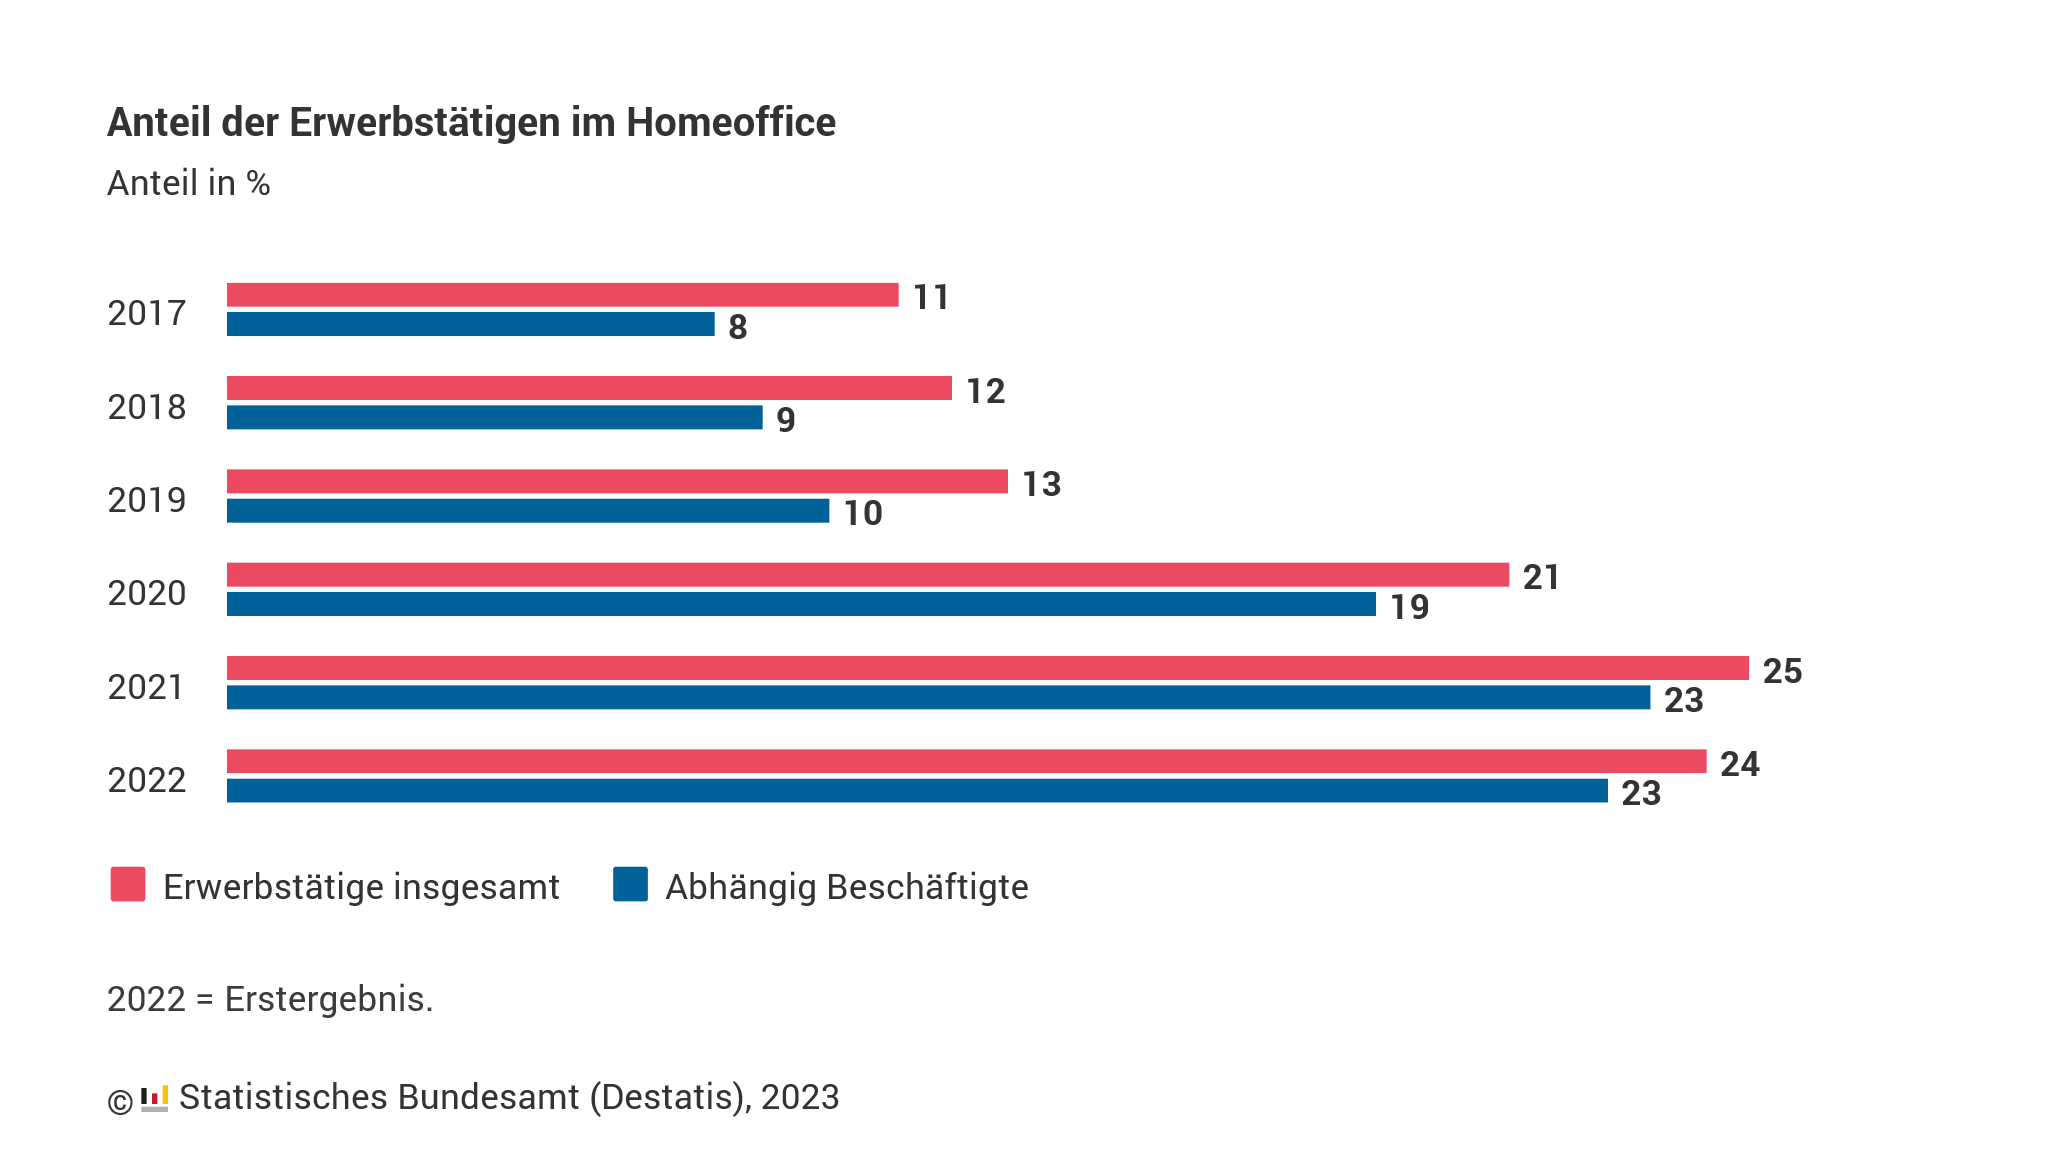 Anteil der Erwerbstätigen im HomeOffice (in %) von 2017 bis 2022. Bild: copy Statistisches Bundesamt (Destatis)